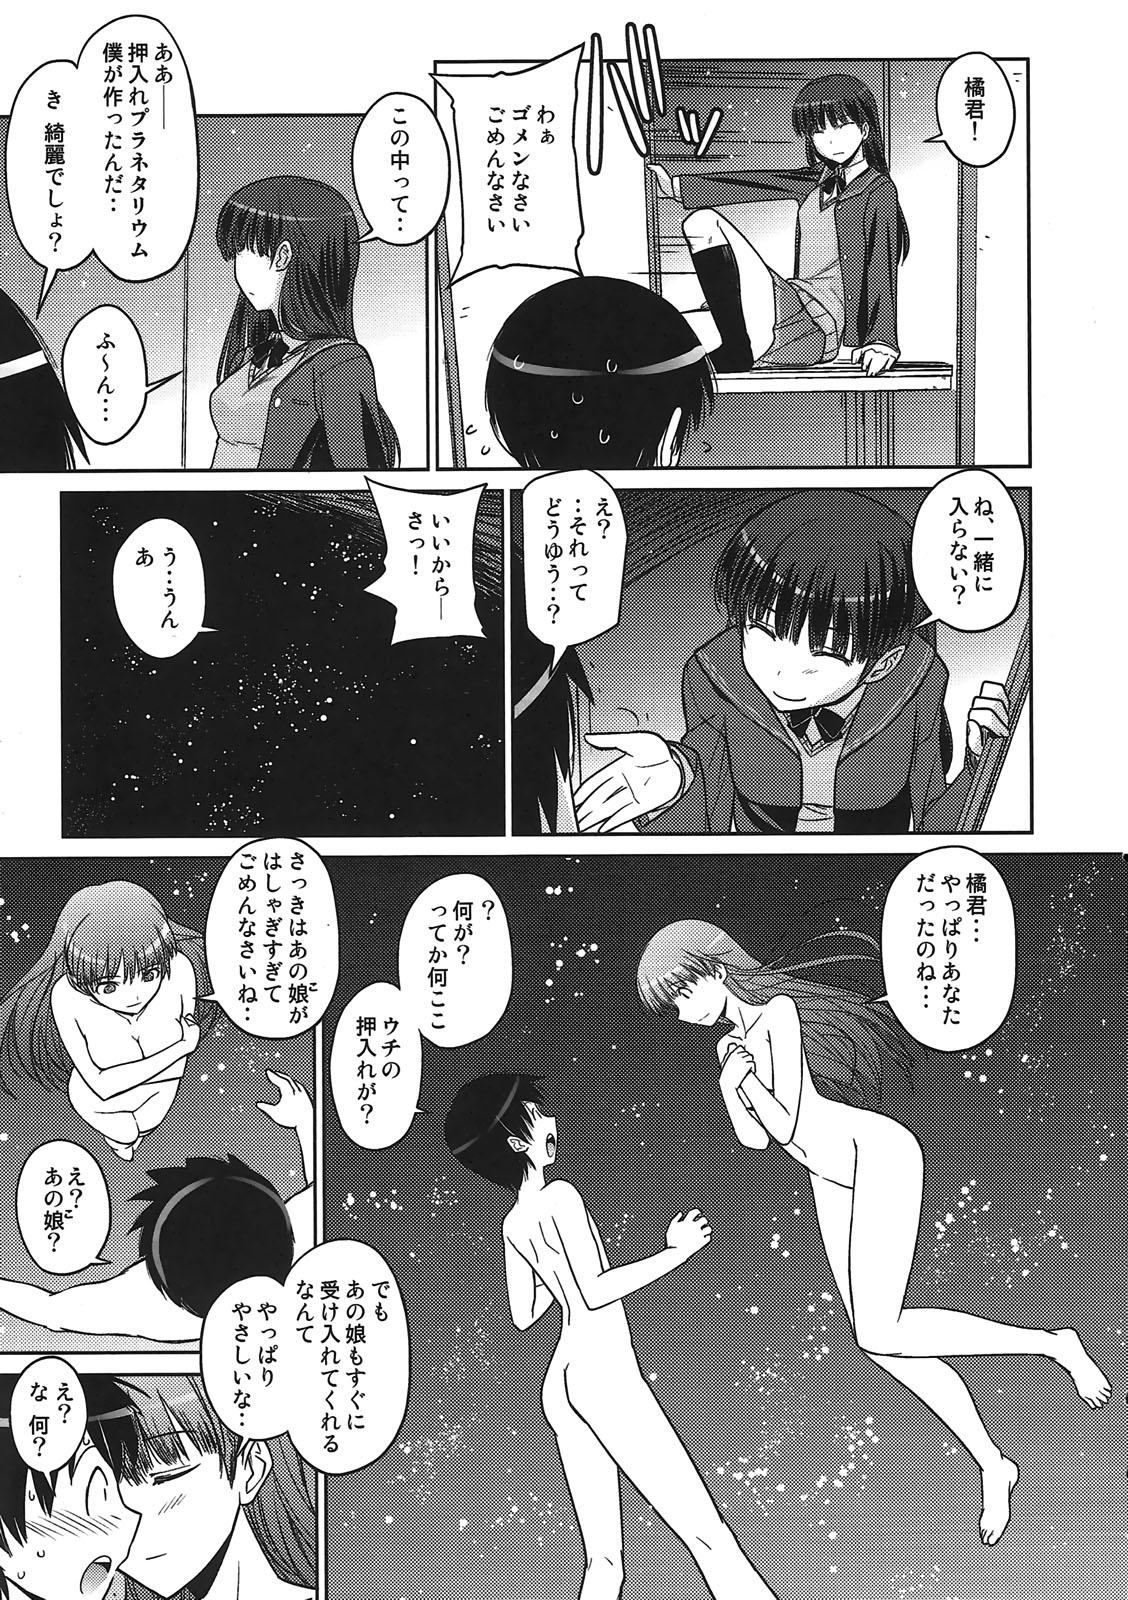 Shesafreak Poyopacho NA - Amagami Punish - Page 8